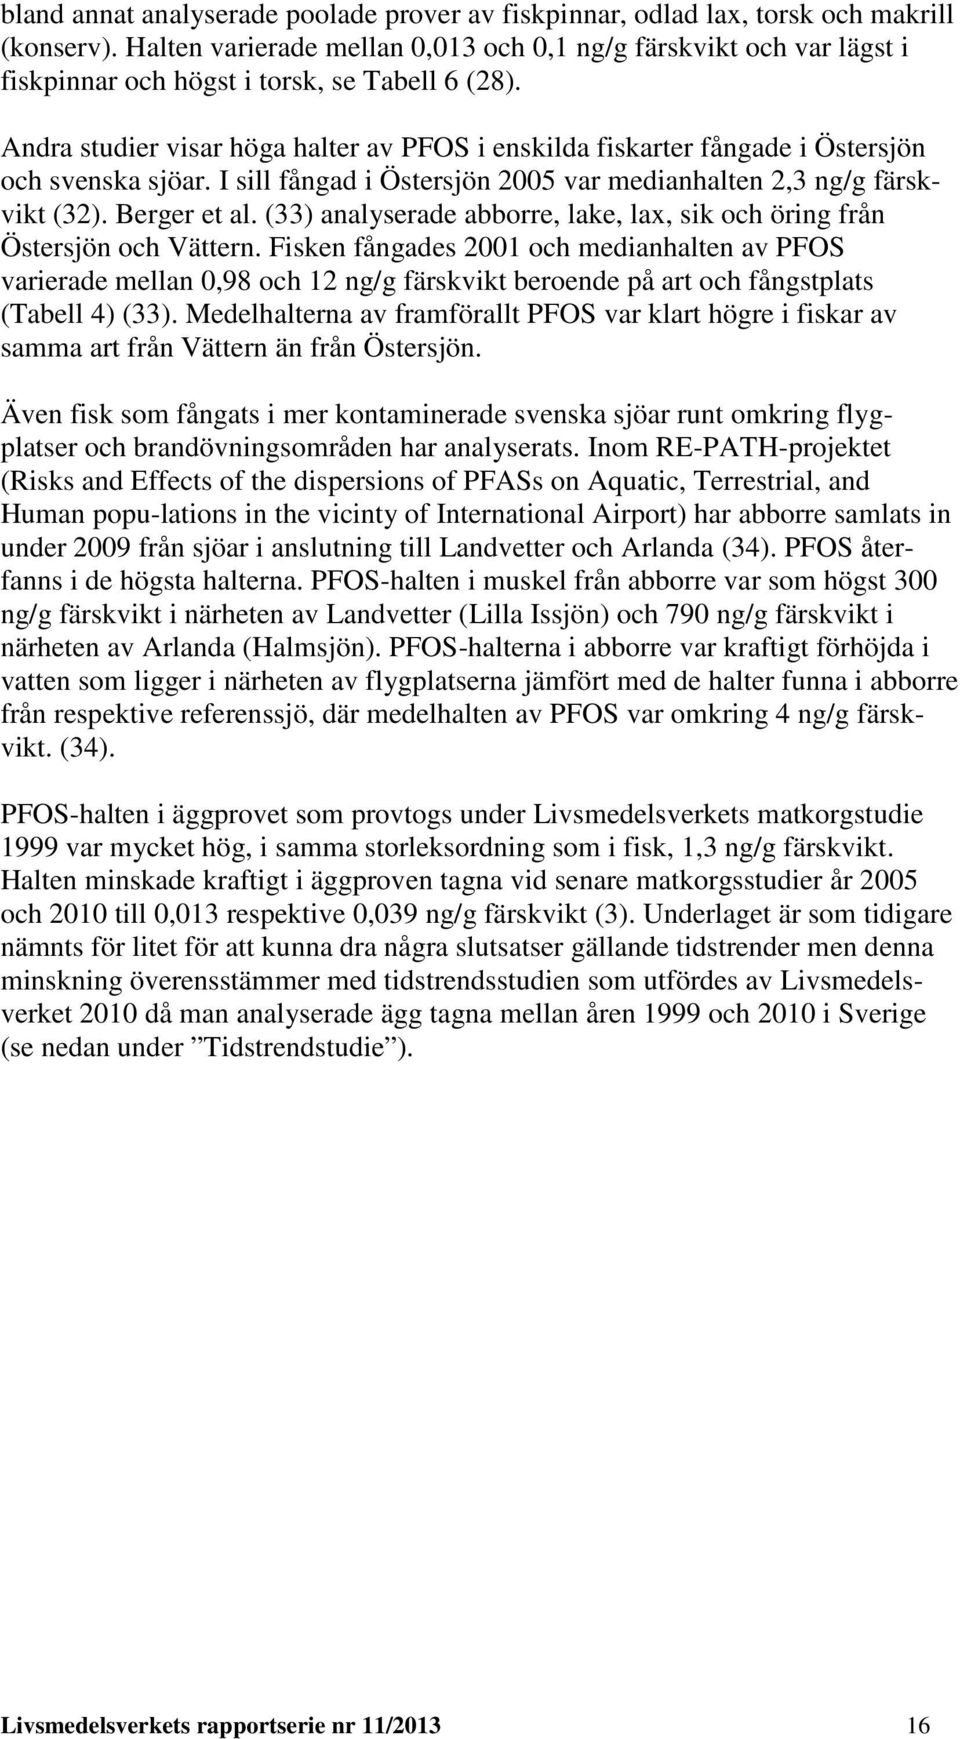 Andra studier visar höga halter av PFOS i enskilda fiskarter fångade i Östersjön och svenska sjöar. I sill fångad i Östersjön 2005 var medianhalten 2,3 ng/g färskvikt (32). Berger et al.